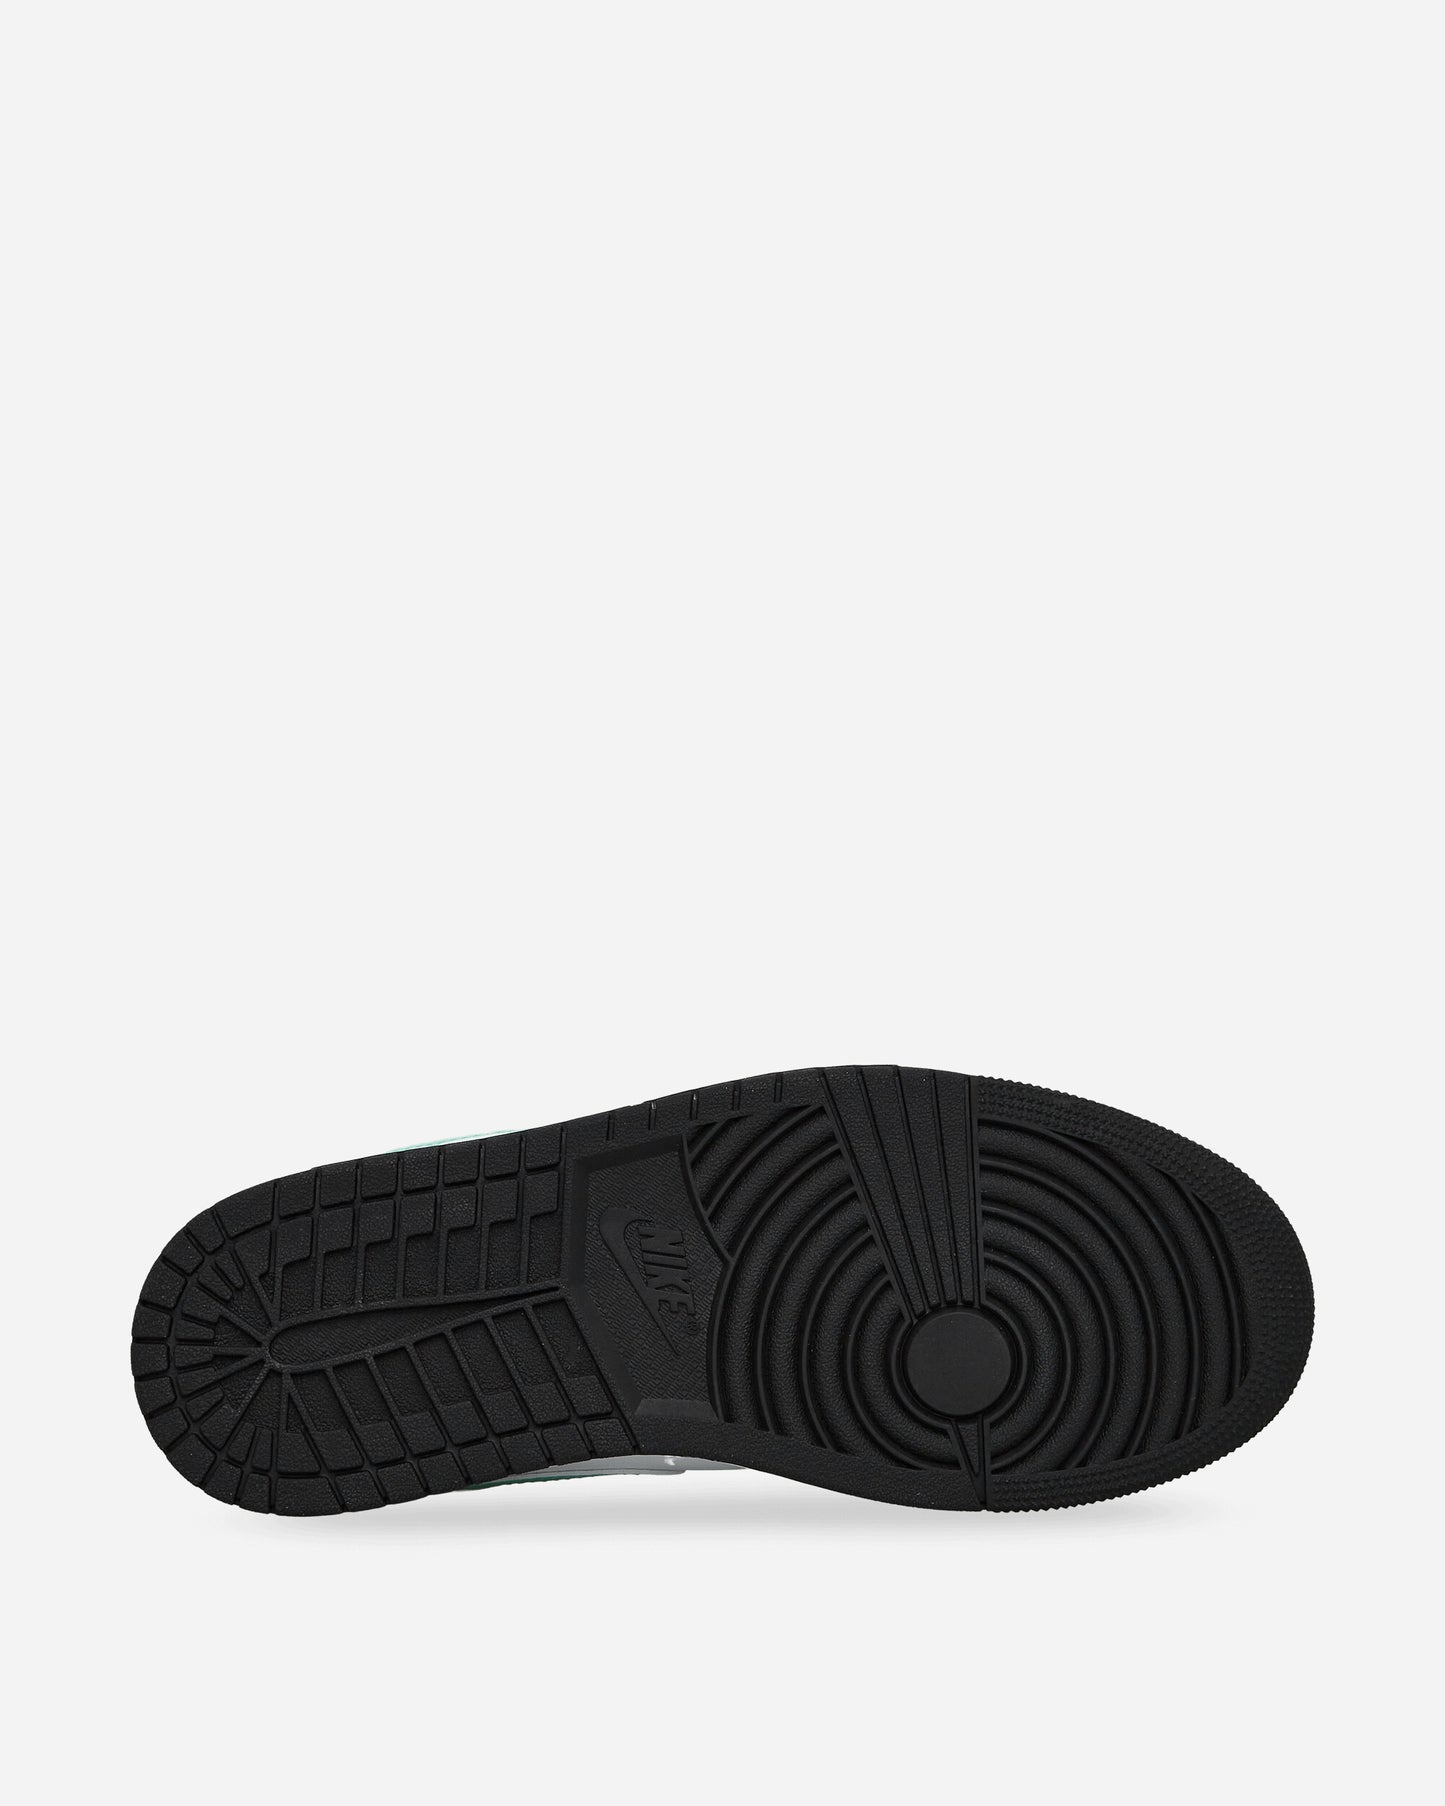 Nike Jordan Air Jordan 1 Low White/Black Sneakers Low 553558-131